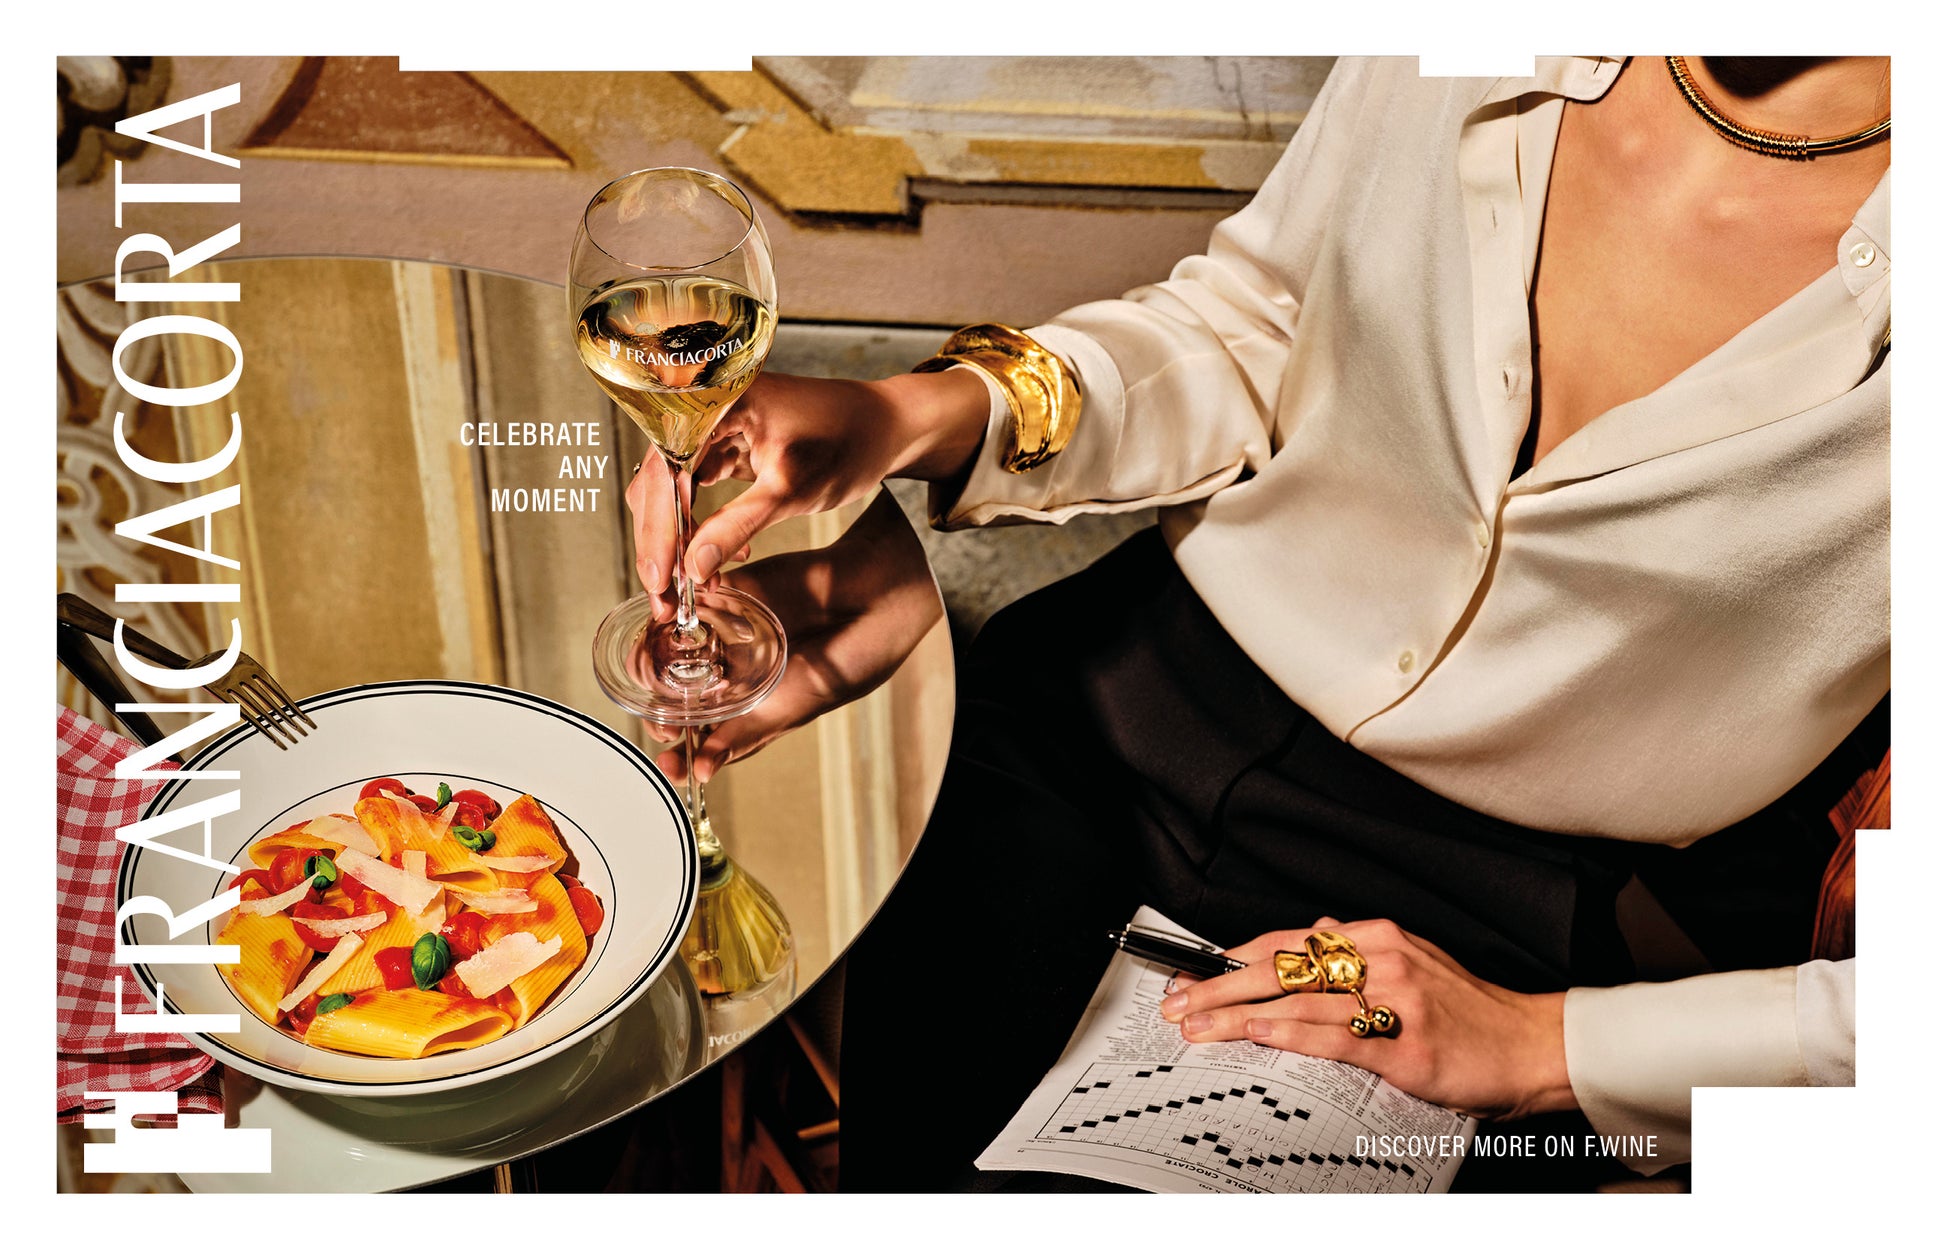 伊最高級スパークリングワイン「フランチャコルタ 」が新広告キャンペーンを公開